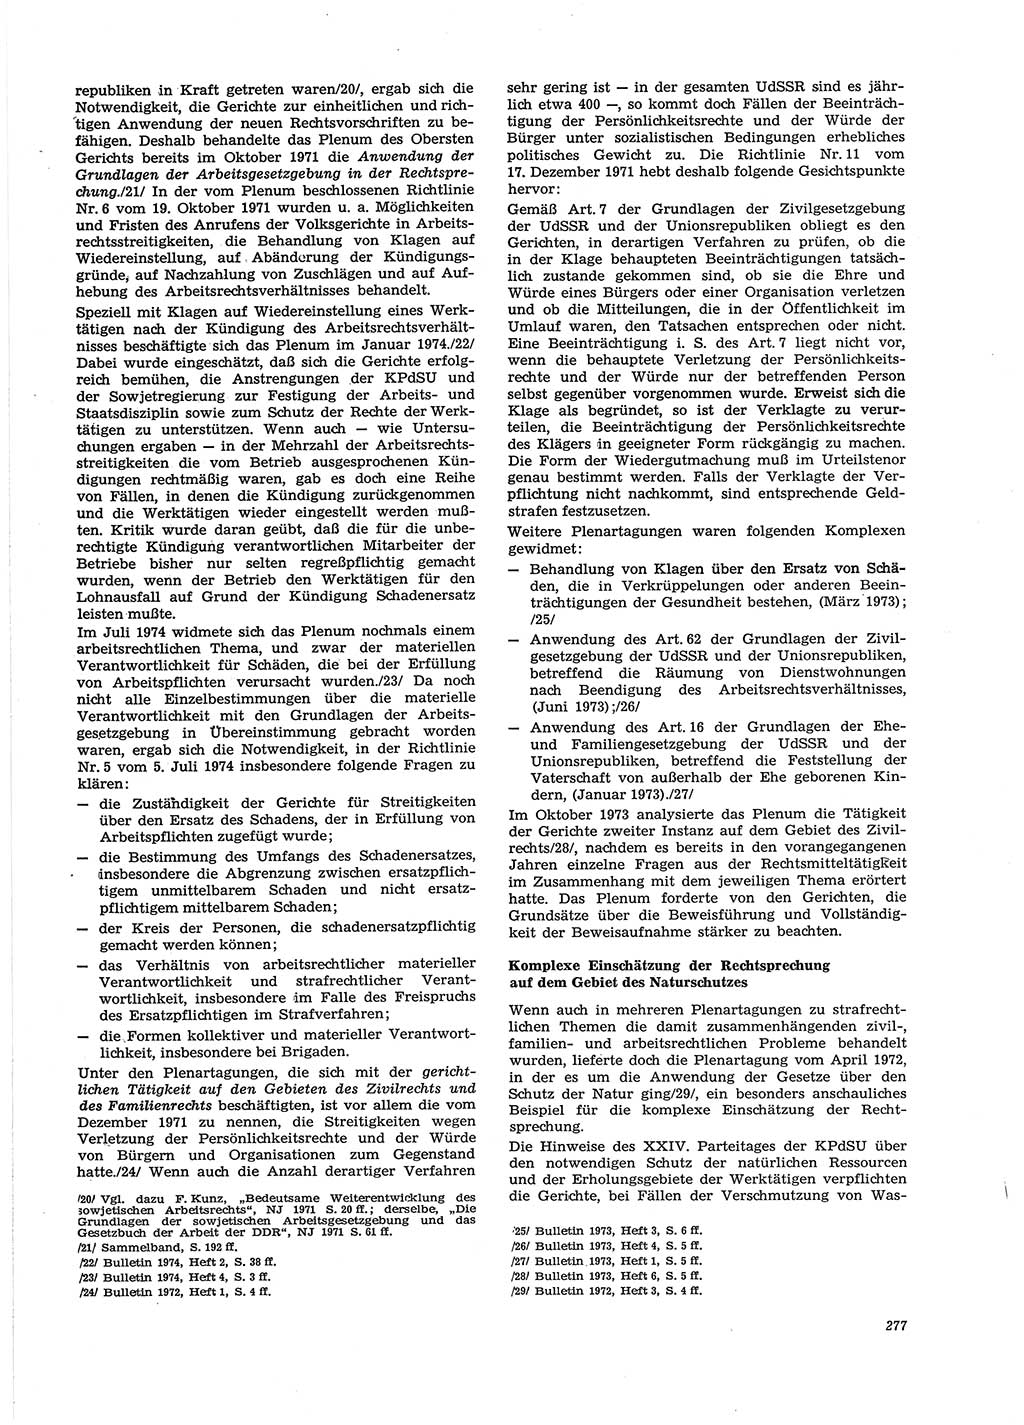 Neue Justiz (NJ), Zeitschrift für Recht und Rechtswissenschaft [Deutsche Demokratische Republik (DDR)], 29. Jahrgang 1975, Seite 277 (NJ DDR 1975, S. 277)